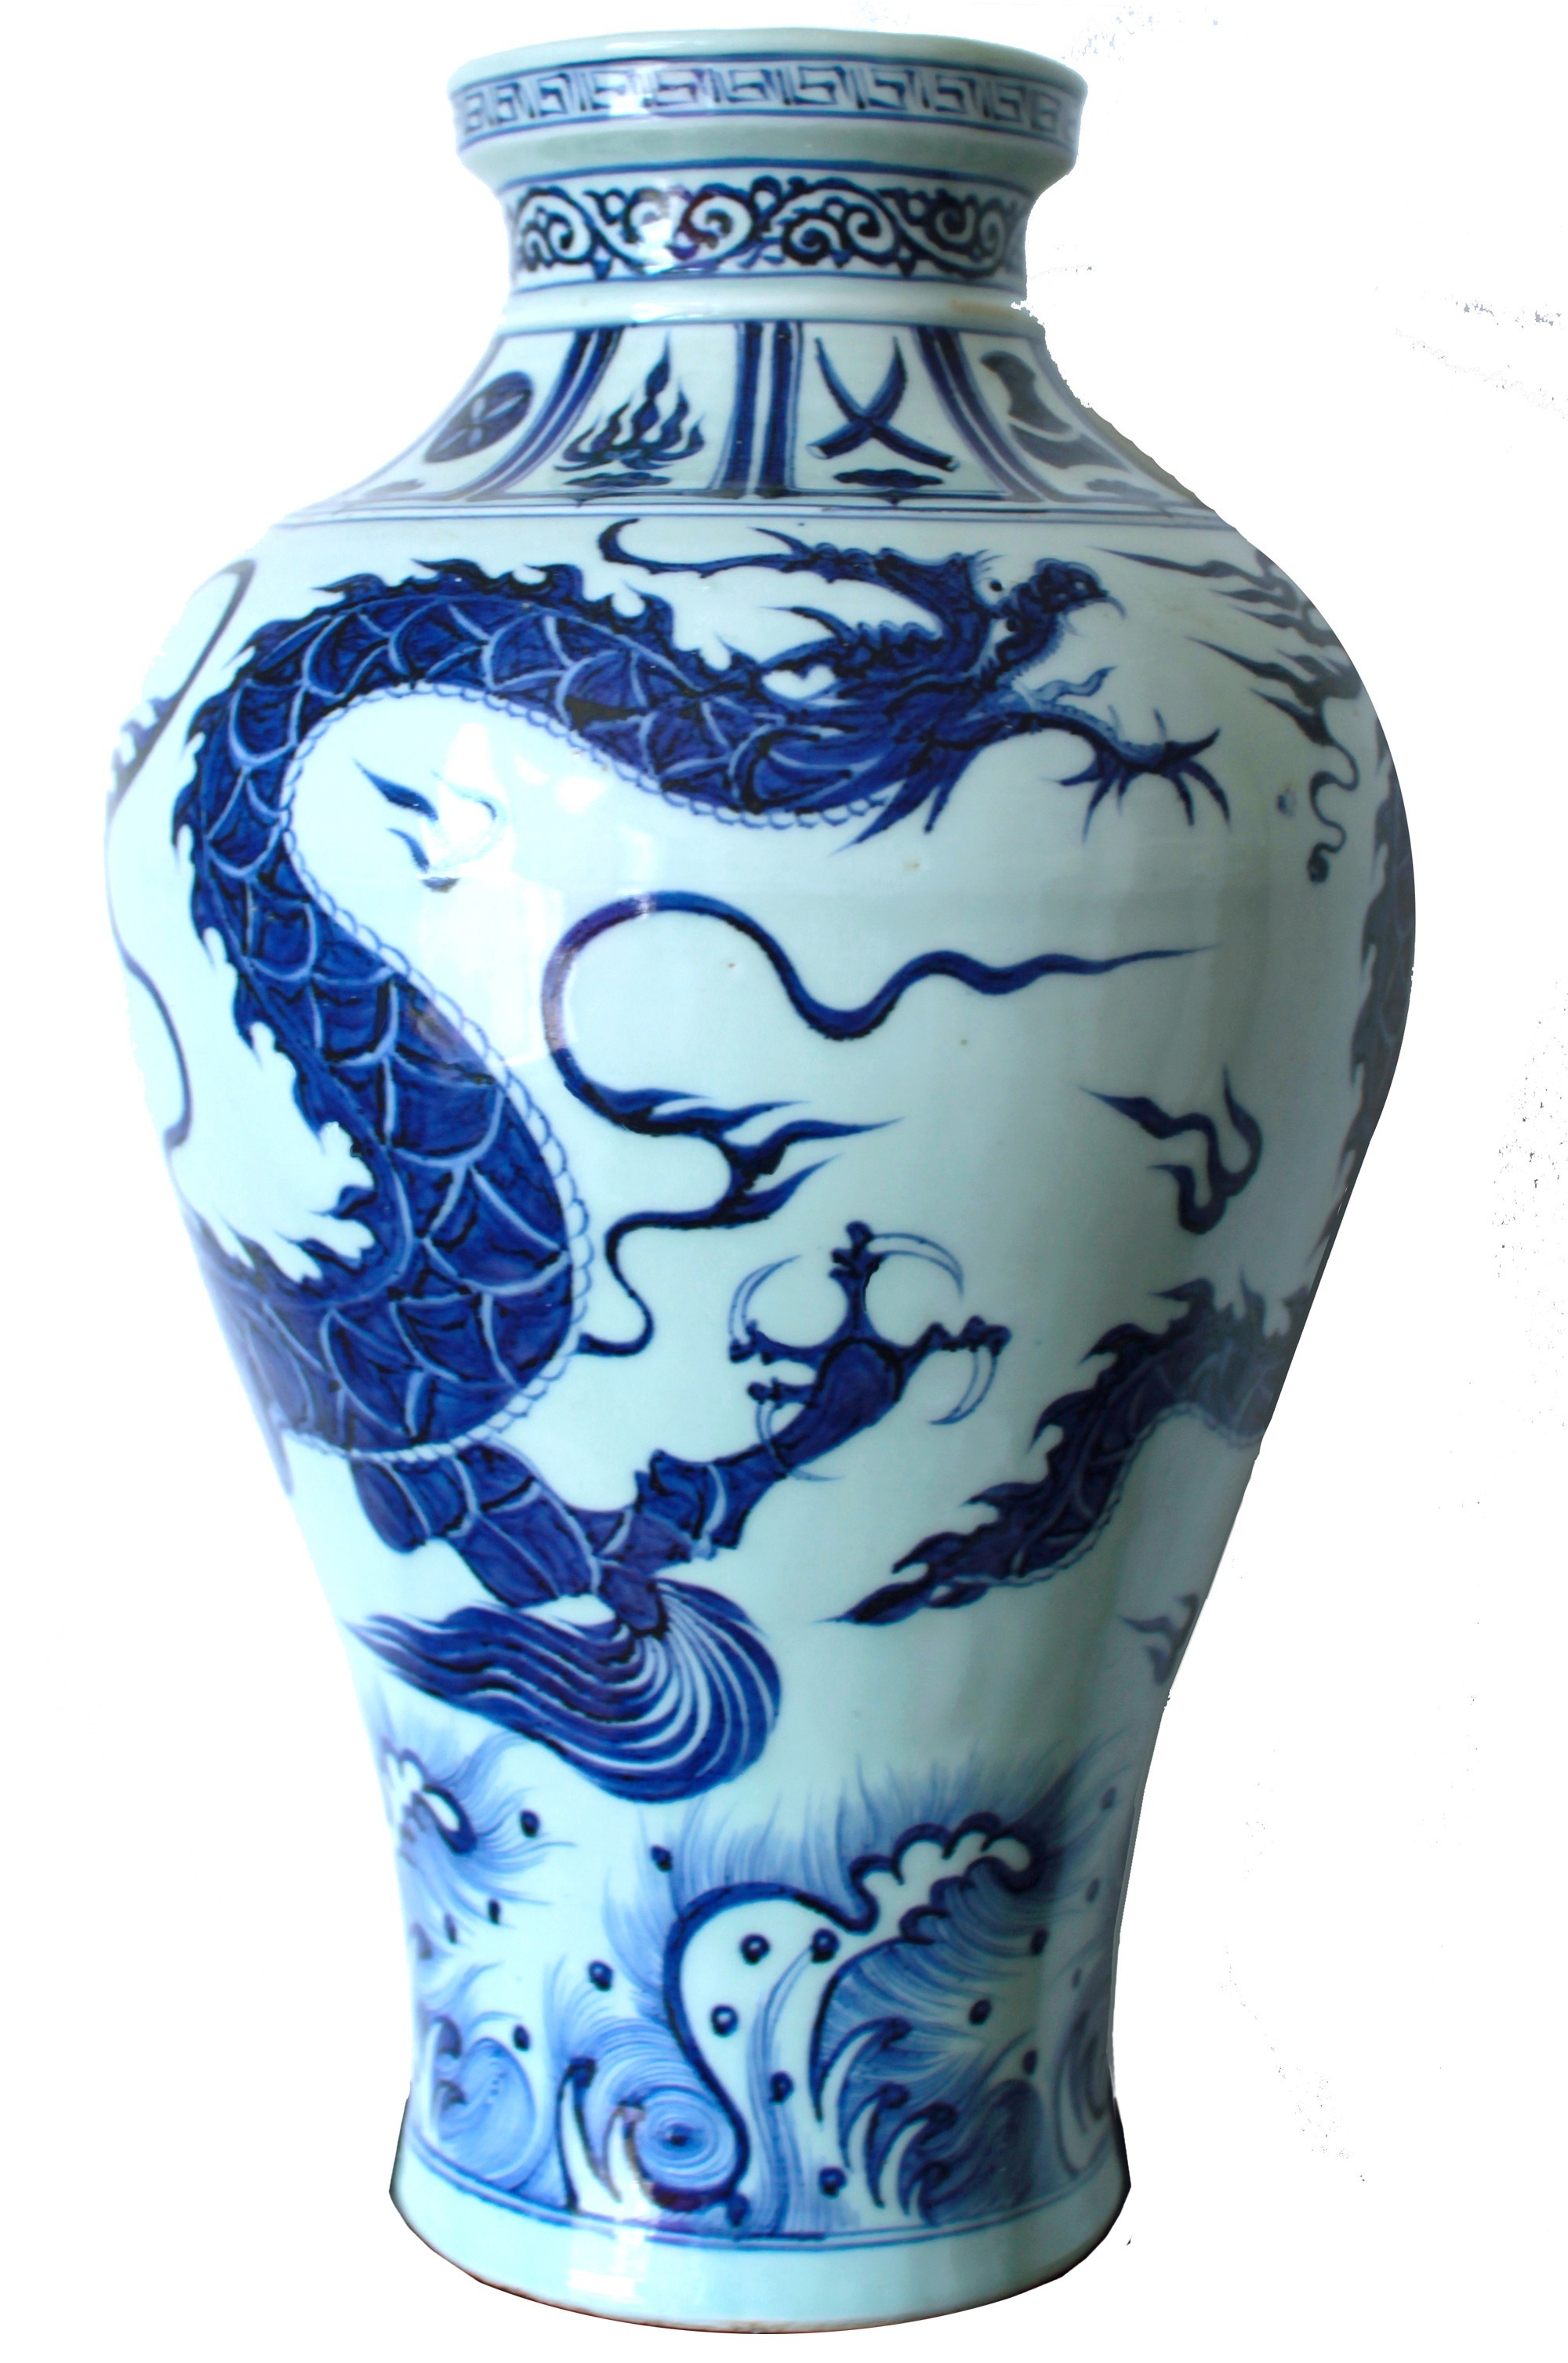 La porcelaine bleue et blanche chinoise — la plus connue de Chine